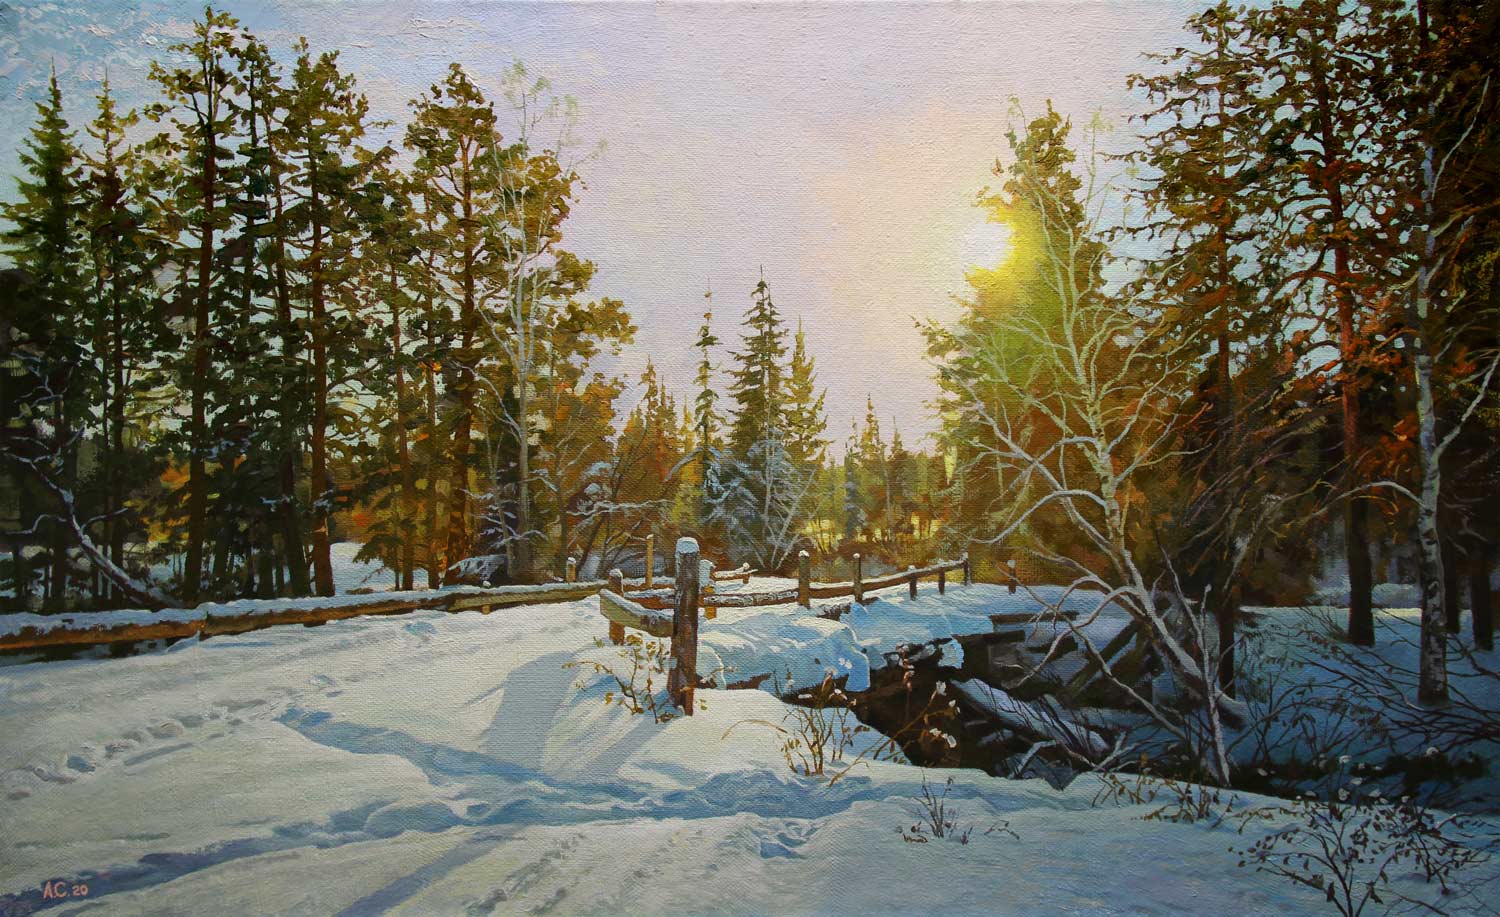 The Snow and Sun - 1, Alexander Samokhvalov, Buy the painting Oil